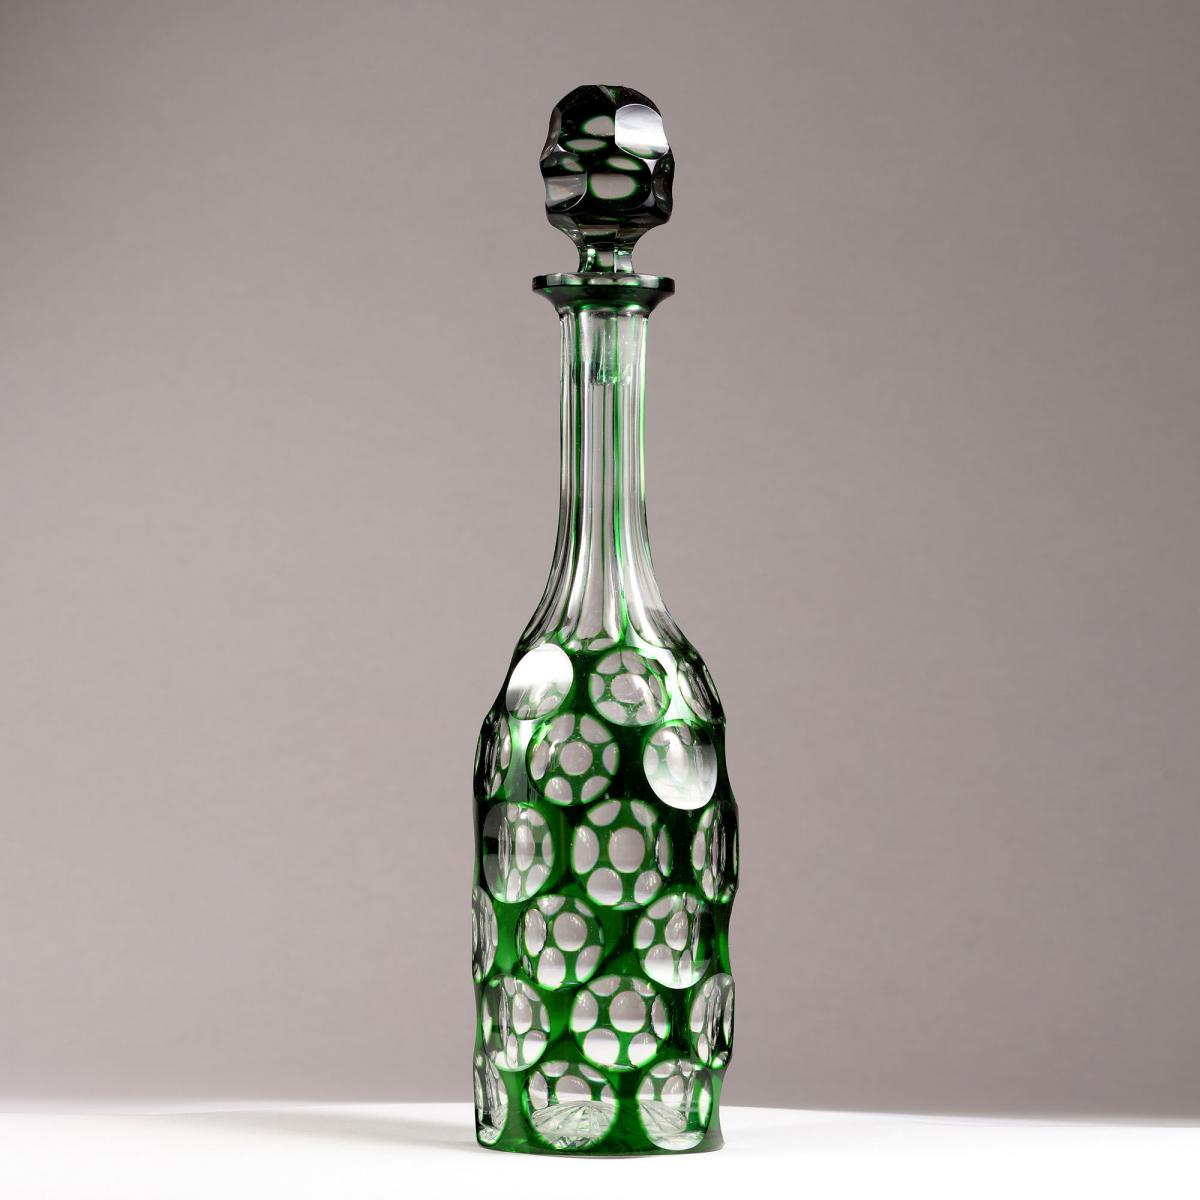 A cut glass bottle